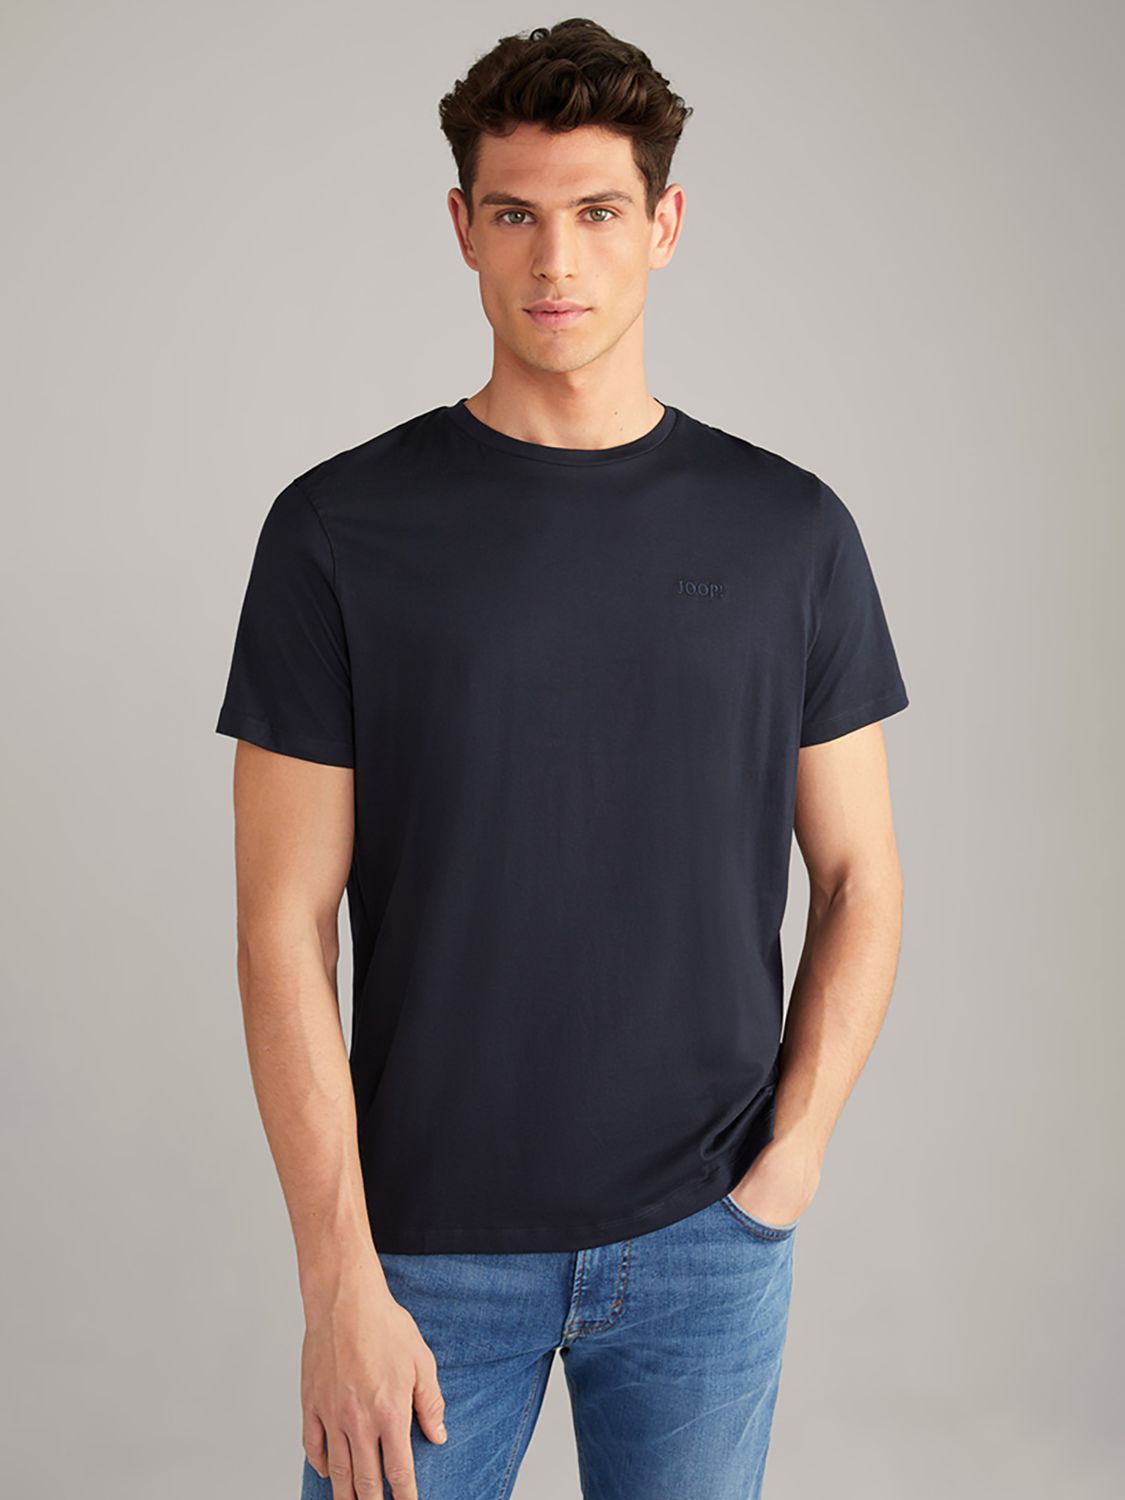 JOOP! Cosimo Short Sleeve T-shirt, Dark Blue at John Lewis & Partners